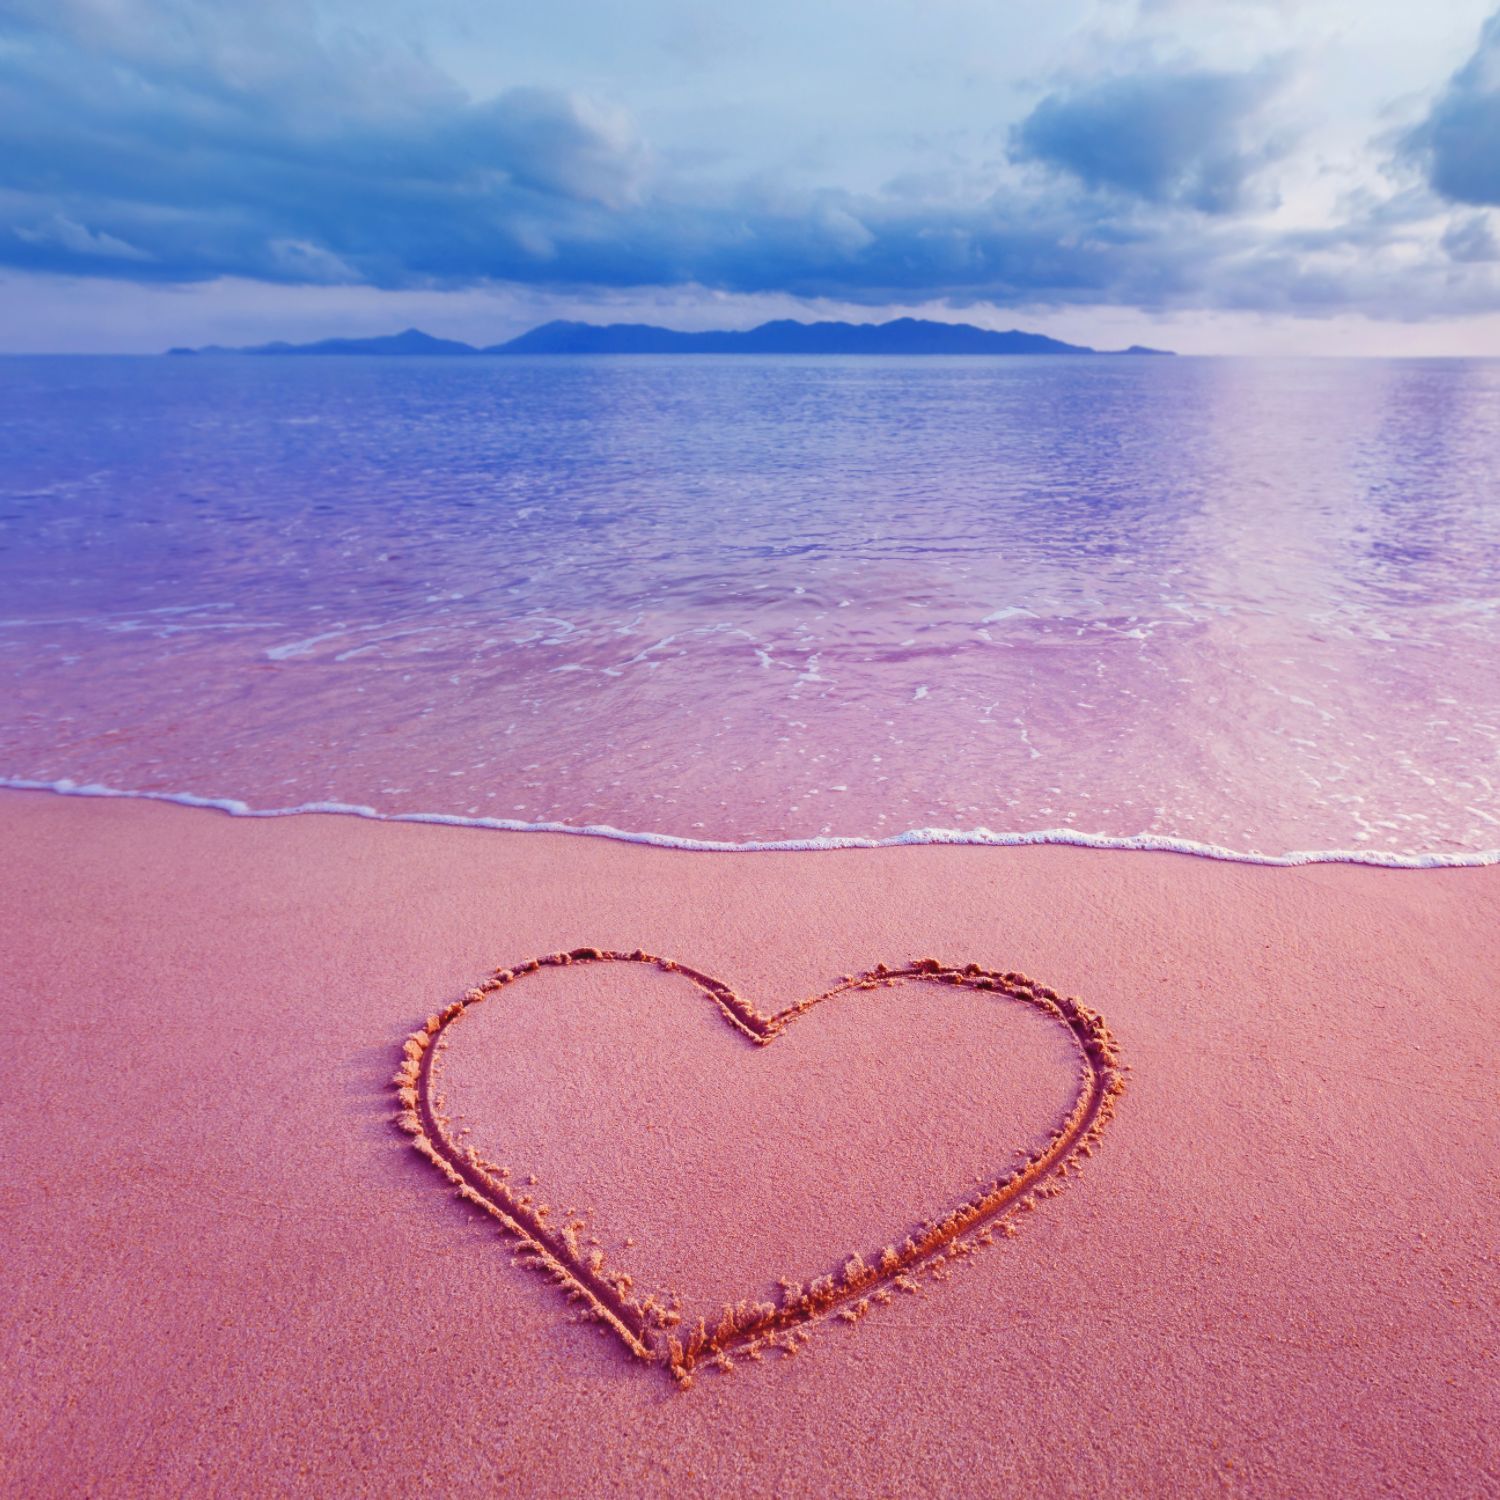 Resortline ギリシャ クレタ島にあるエラフォニシビーチは ピンク色をした珍しくて可愛すぎる砂浜で 世界中のハネムーナーや観光客から人気を博しています 遠浅で透き通ったクリアブルーの美しい海とピンクサンドのグラデーションは とても